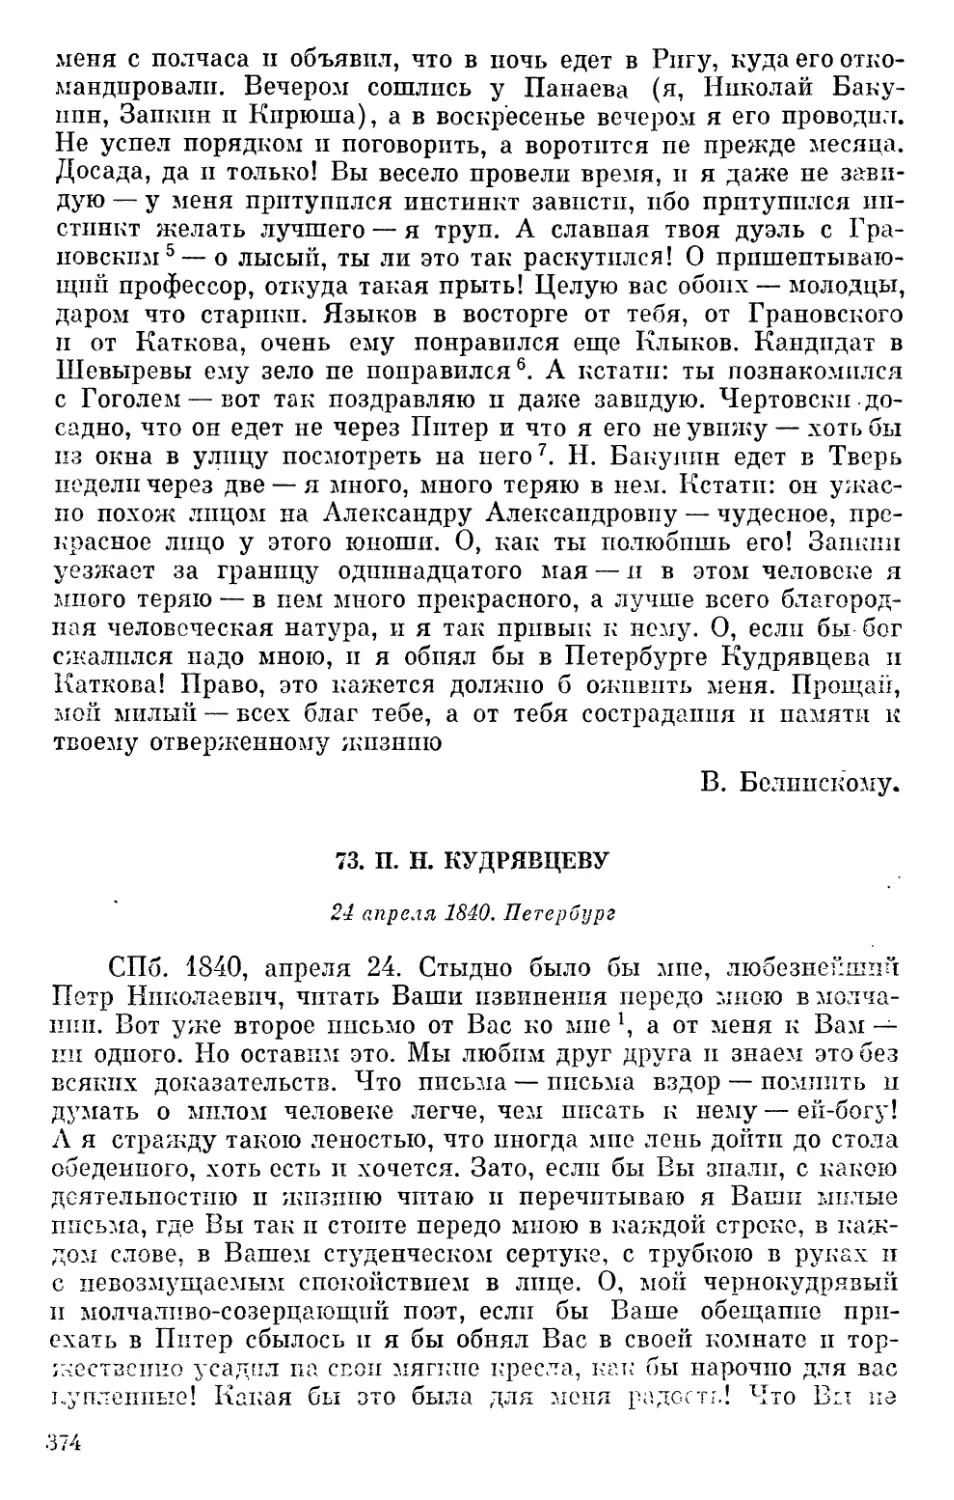 73. П. Н. Кудрявцеву. 24 апреля 1840